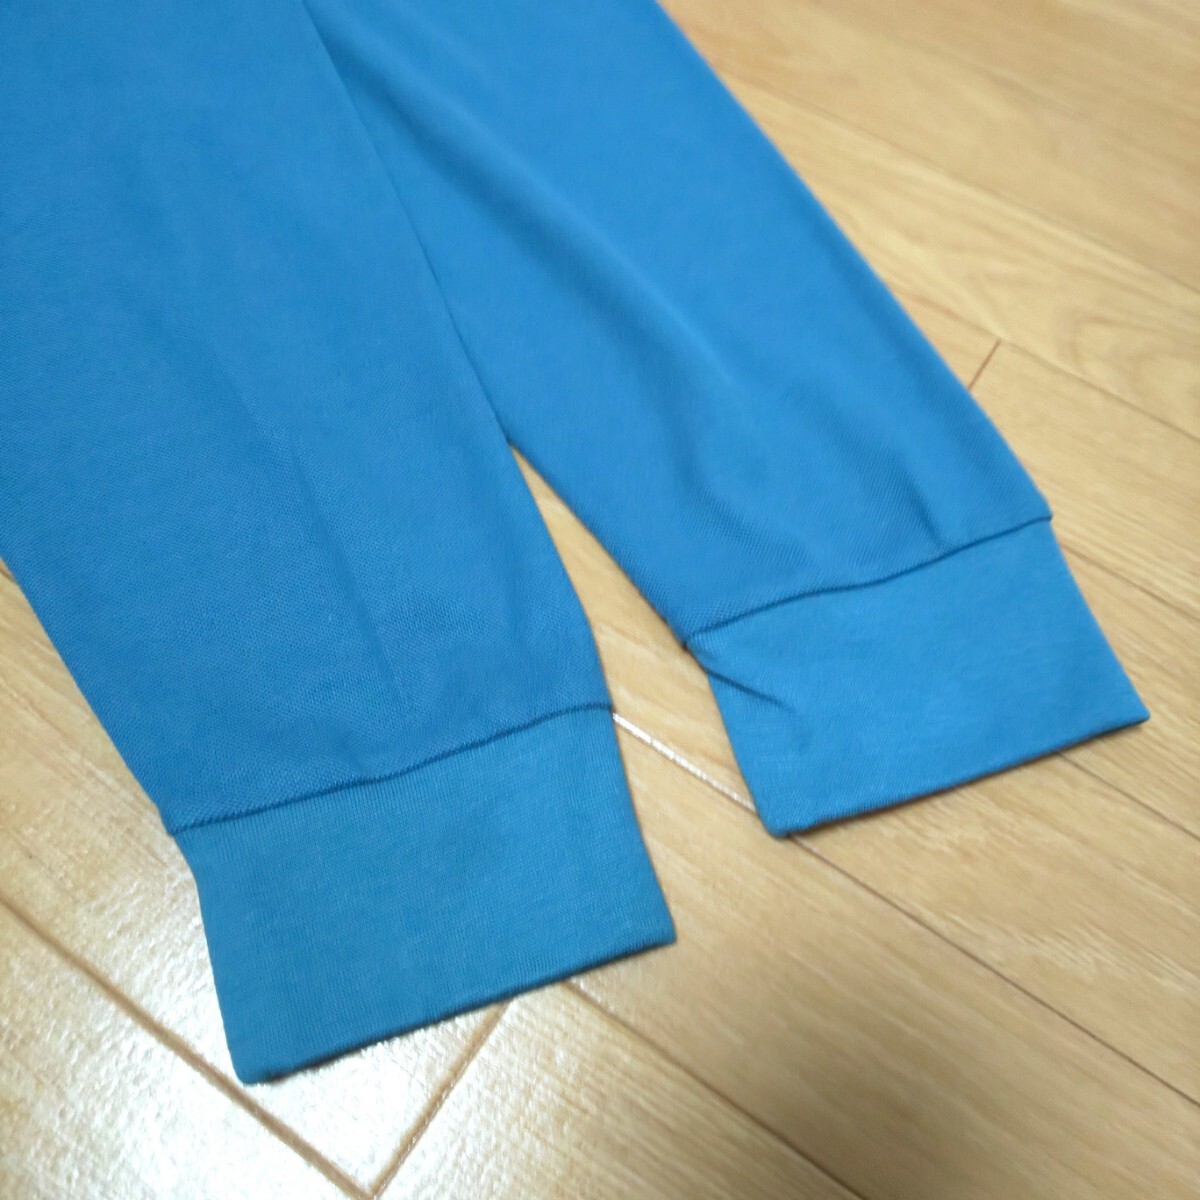 新品 5L NEO UNIVERSE 長袖 ポロシャツ ブルー 未使用 大きいサイズ チェック 青 トップス ビッグサイズ 長袖ポロシャツ